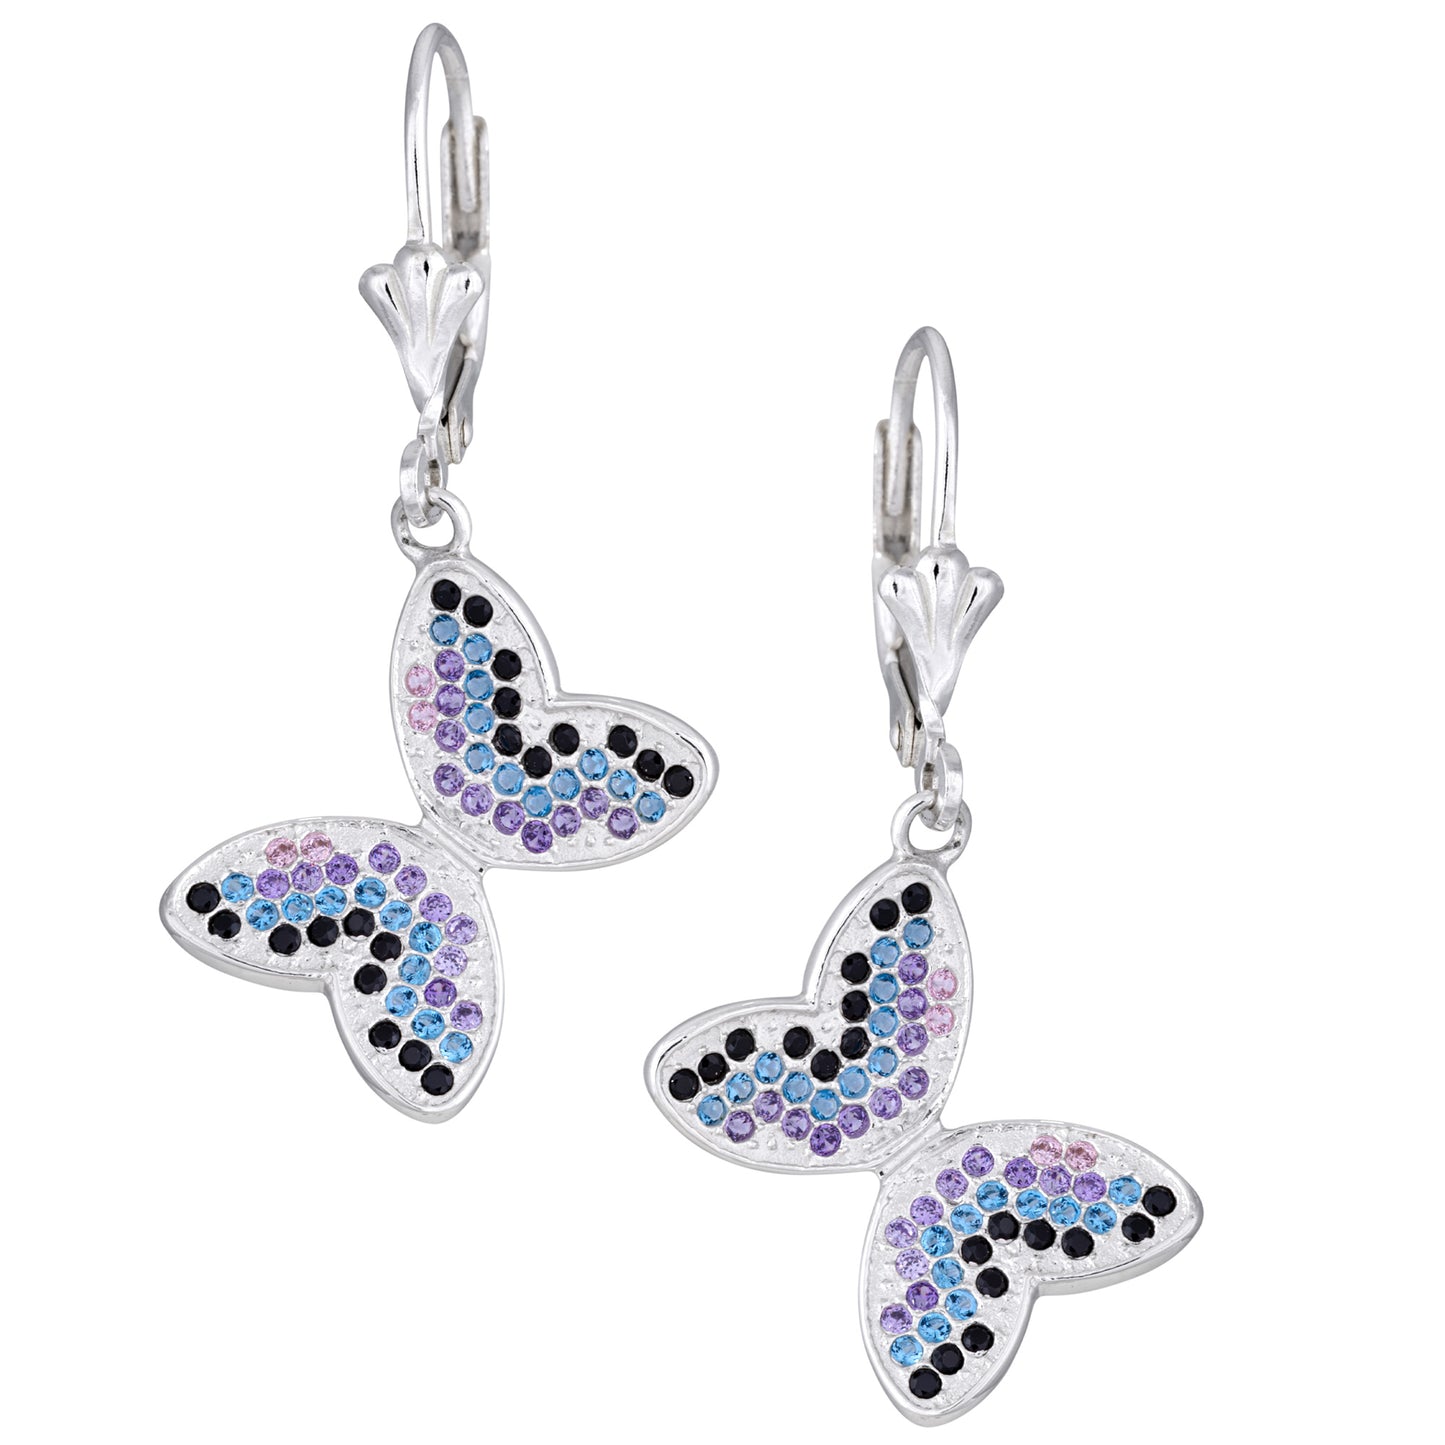 Fluttering Friends Sterling & Crystal Earrings